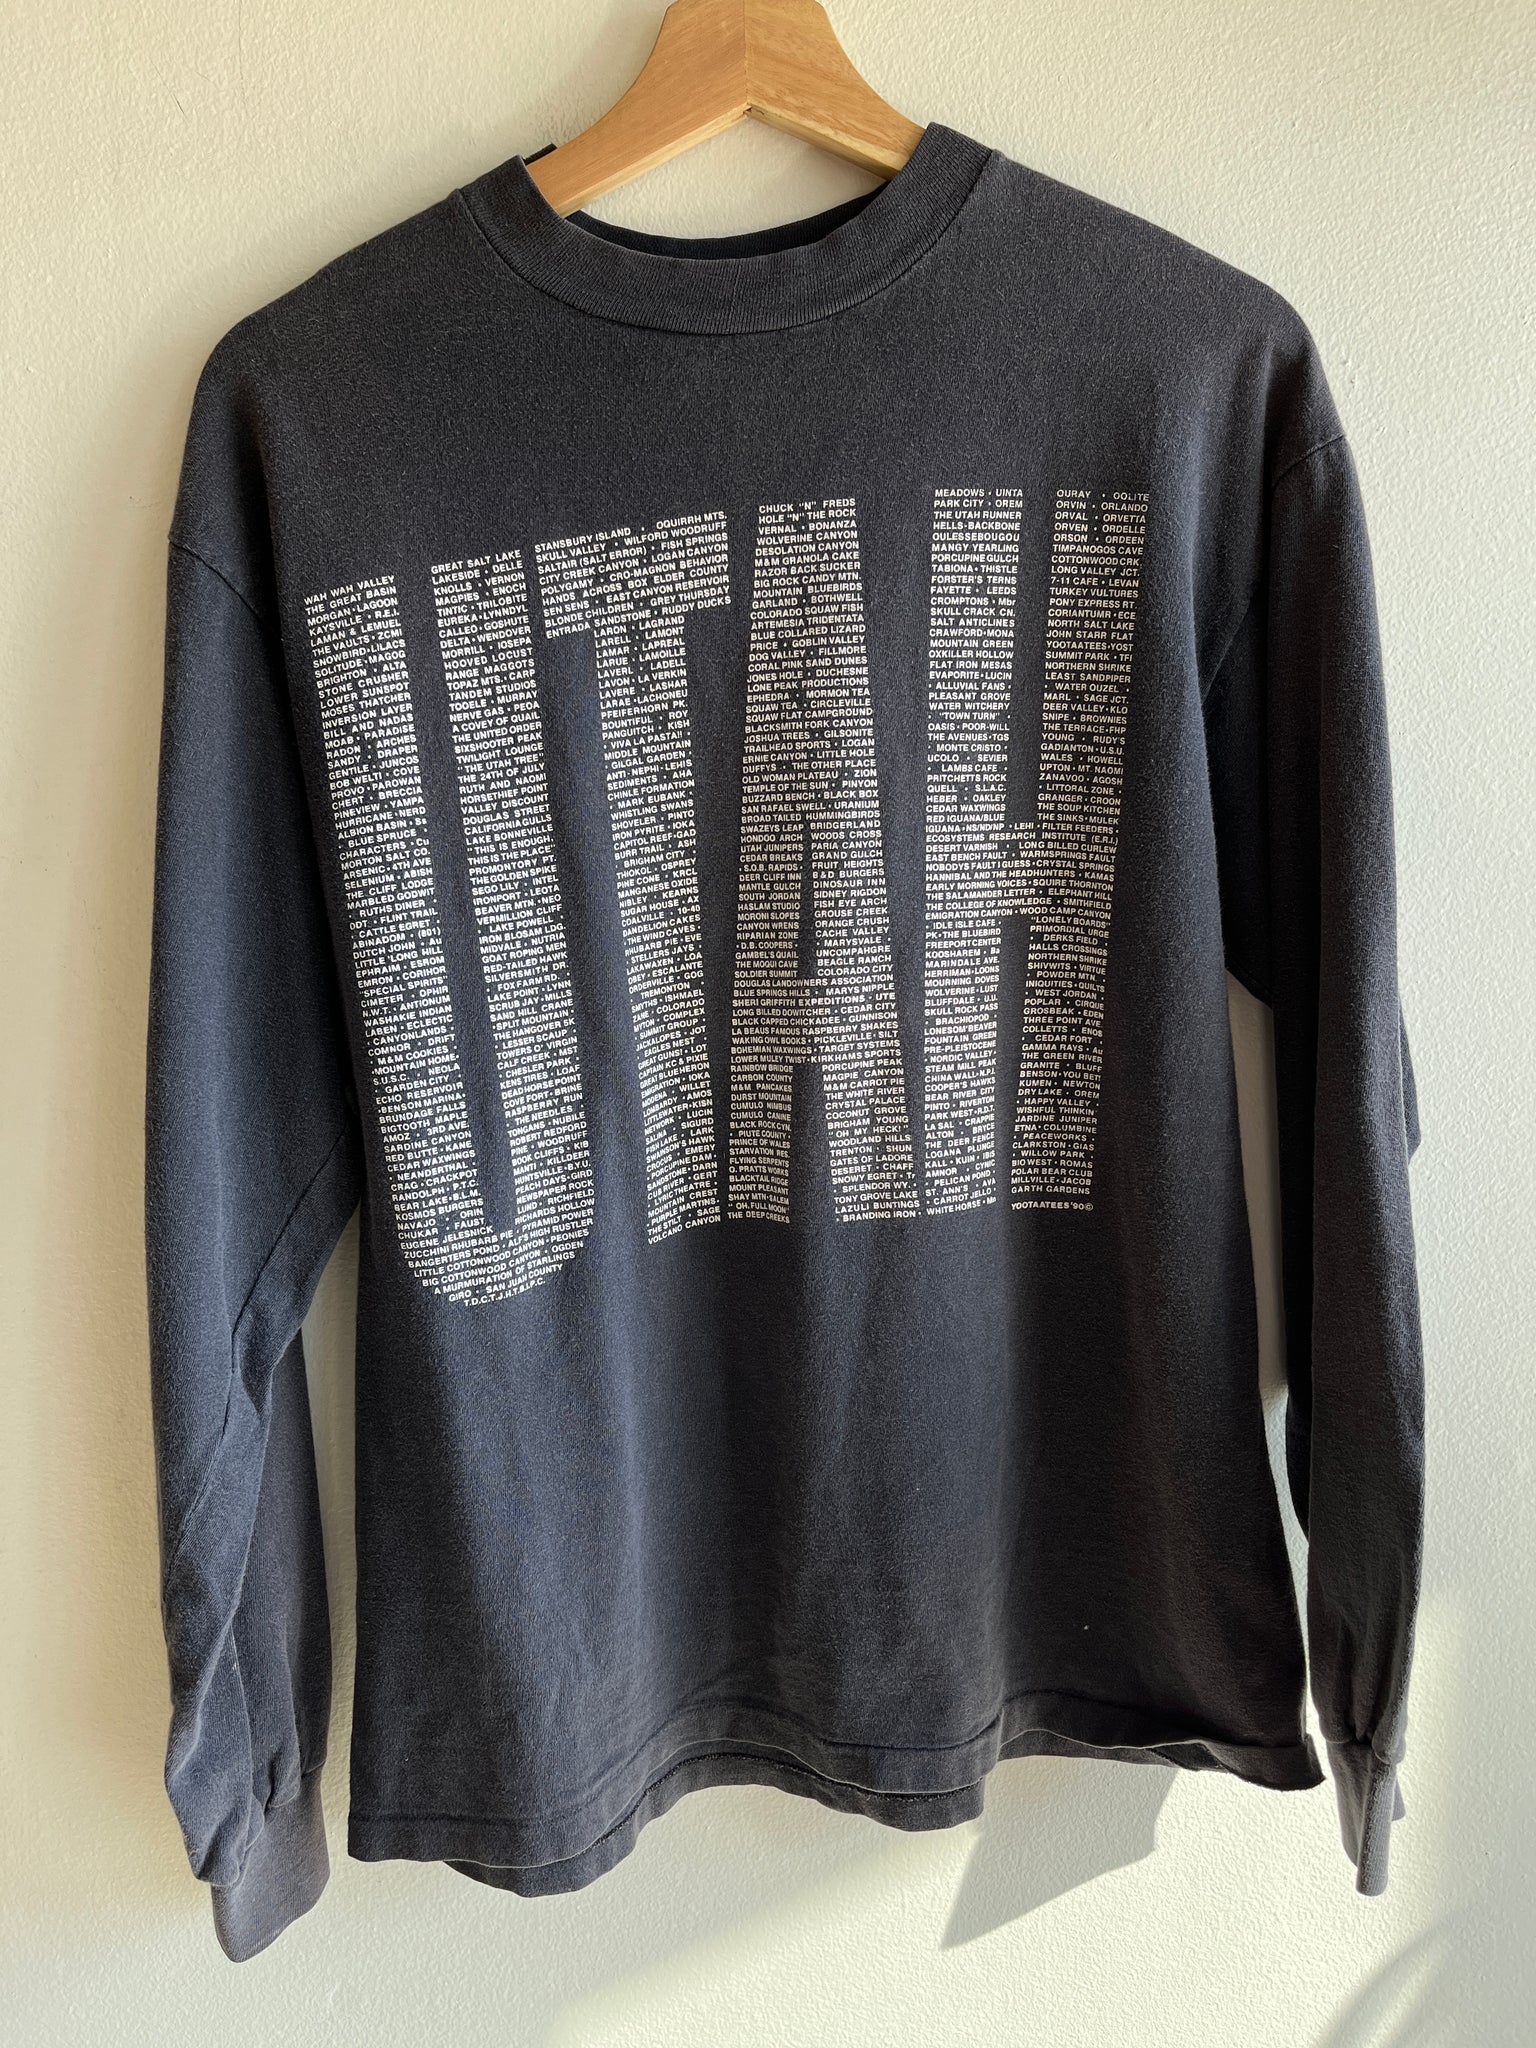 Vintage 1990’s Utah Longsleeve T-Shirt